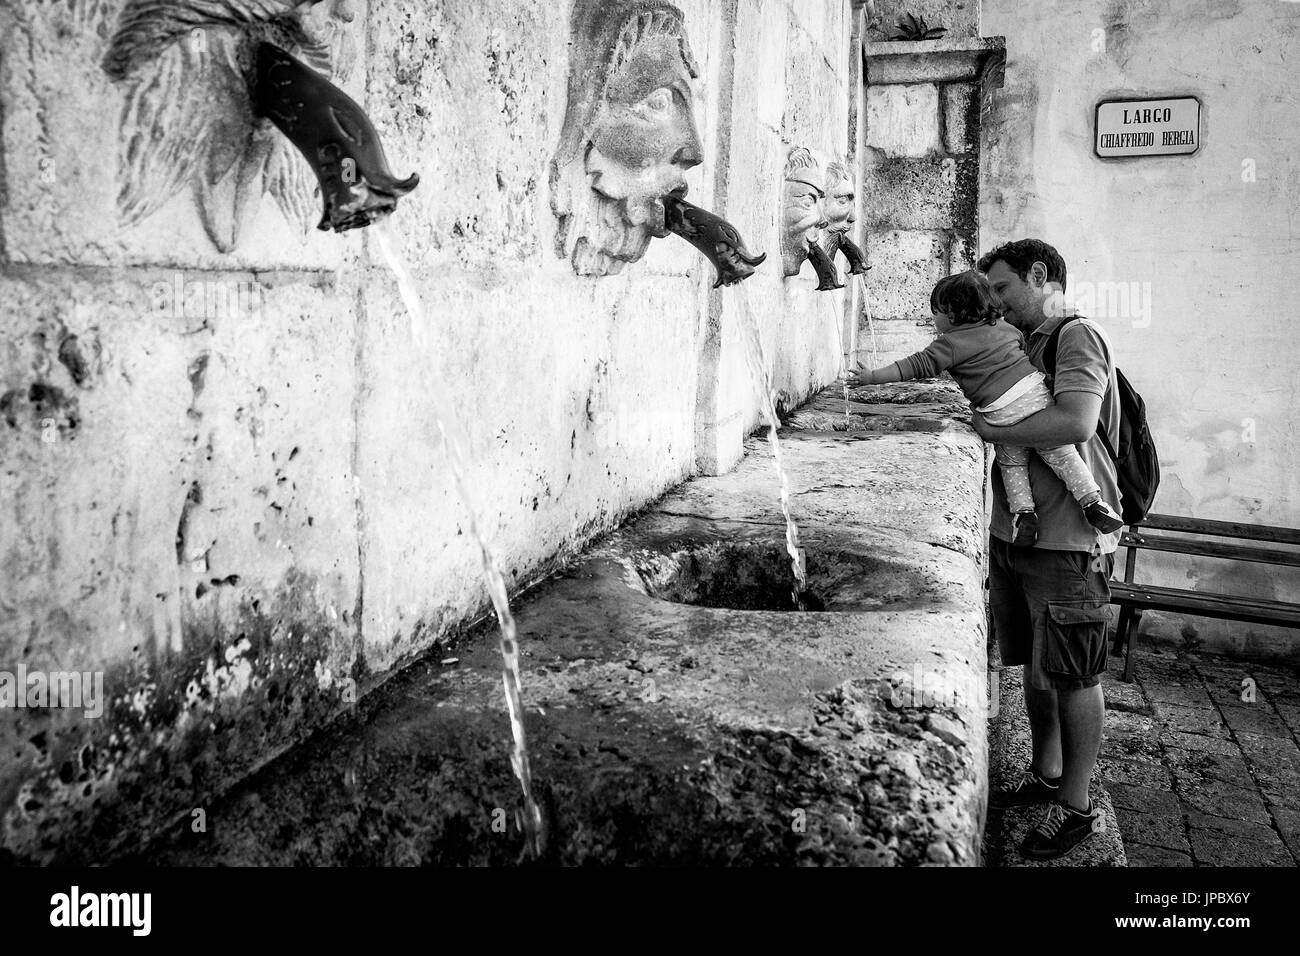 Scanno, Abruzzo, Central Italy, Europe. Refreshment at Sarracco fountain in black and white. Stock Photo